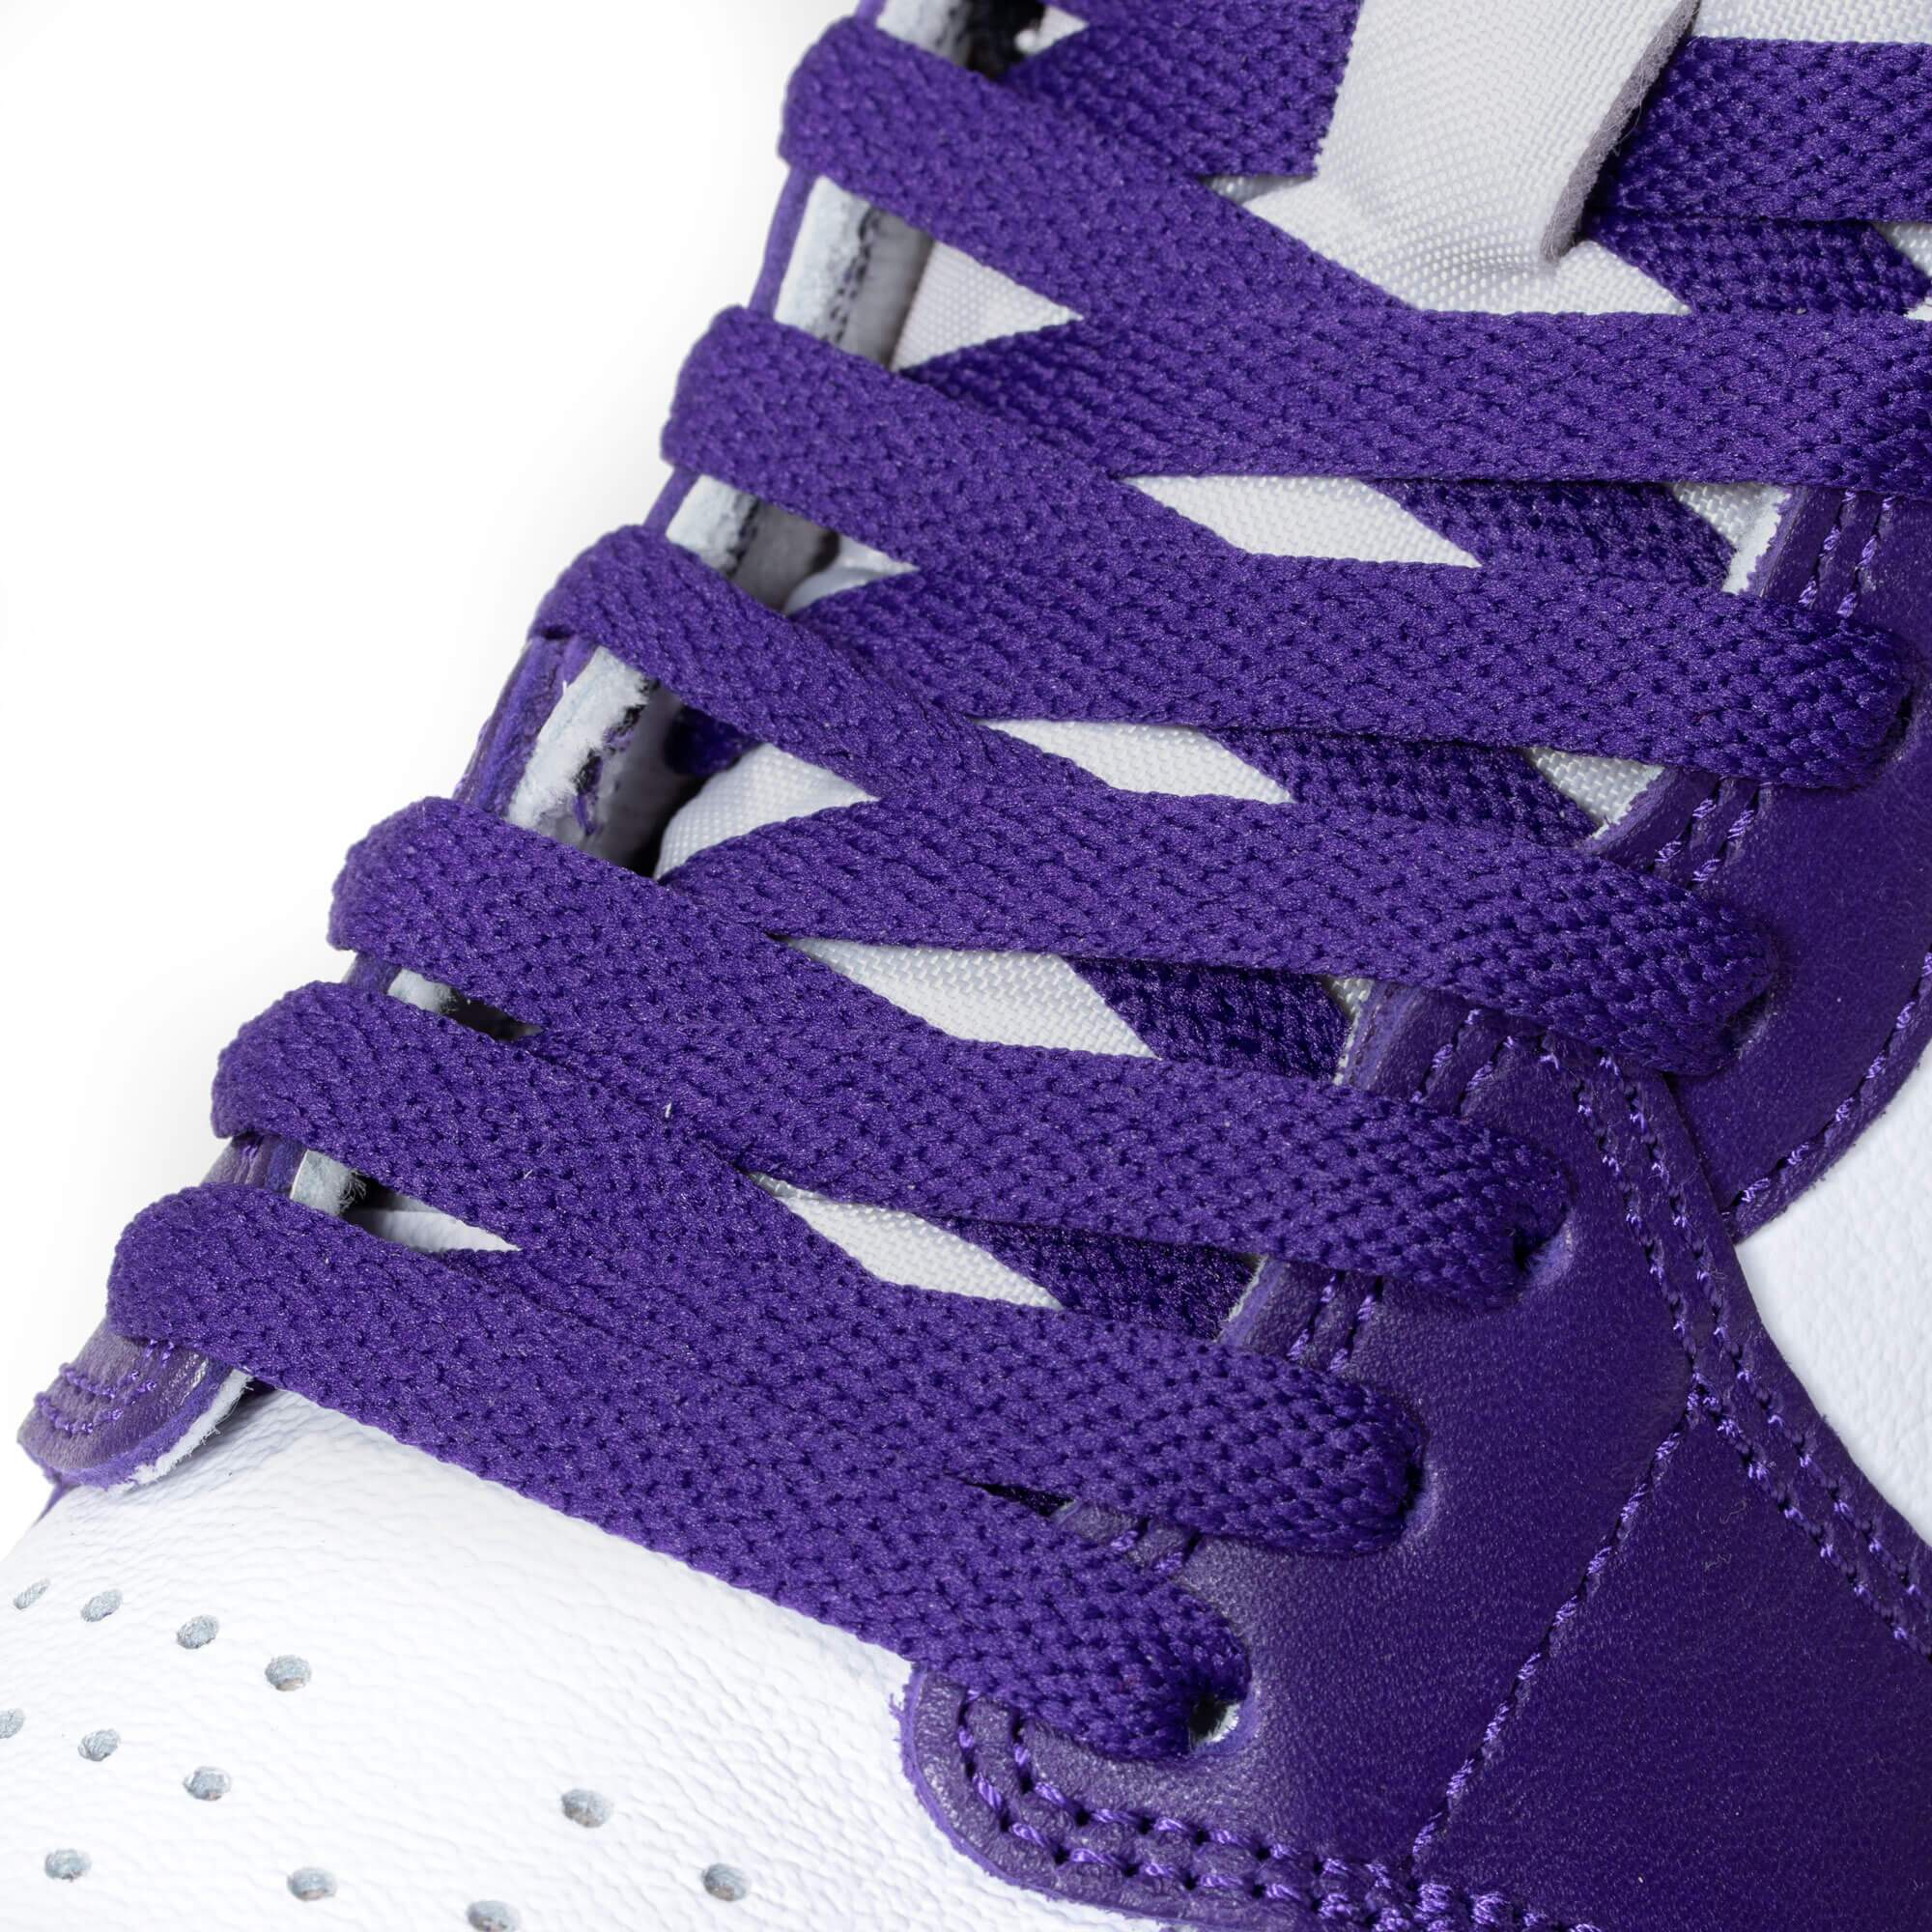 purple jordan shoe laces